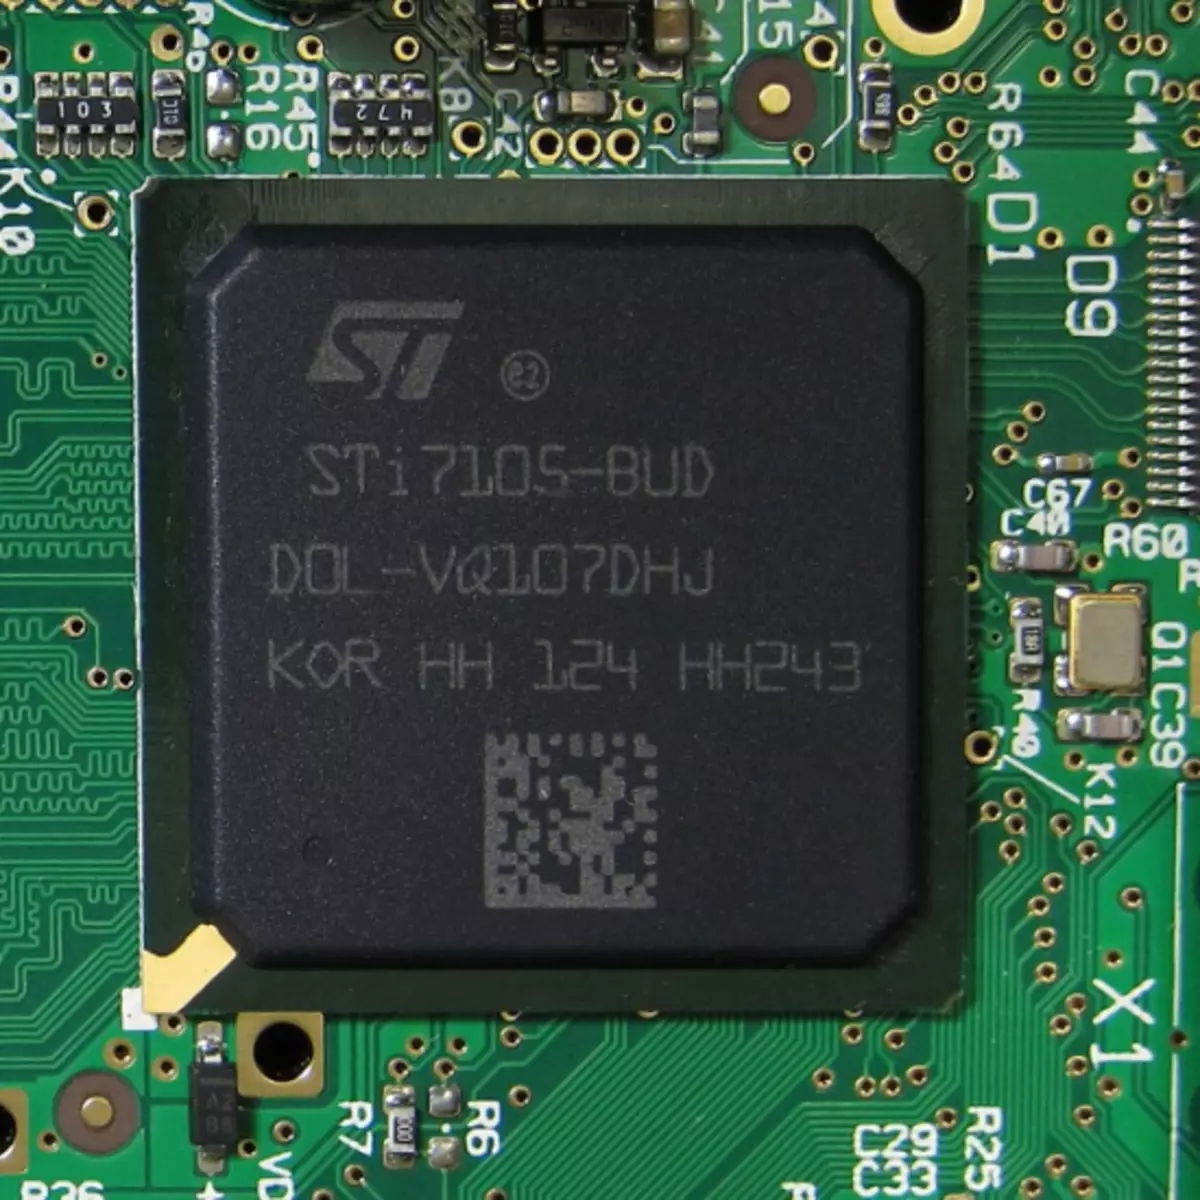 Mag 250 Sti7105-bud-processor